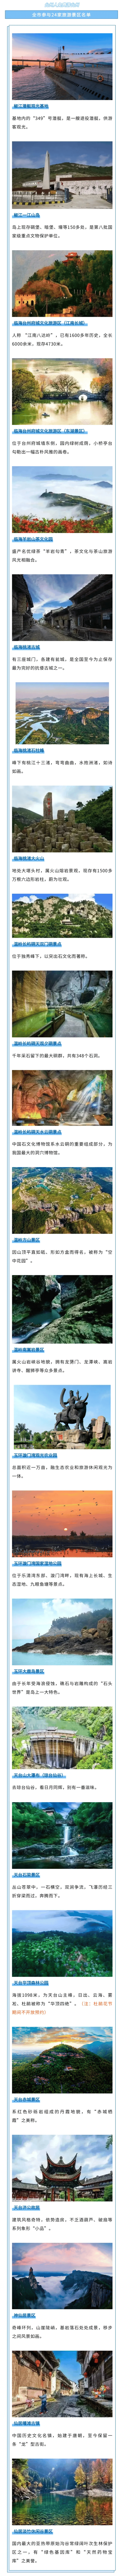 天台南屏旅游景区门票图片